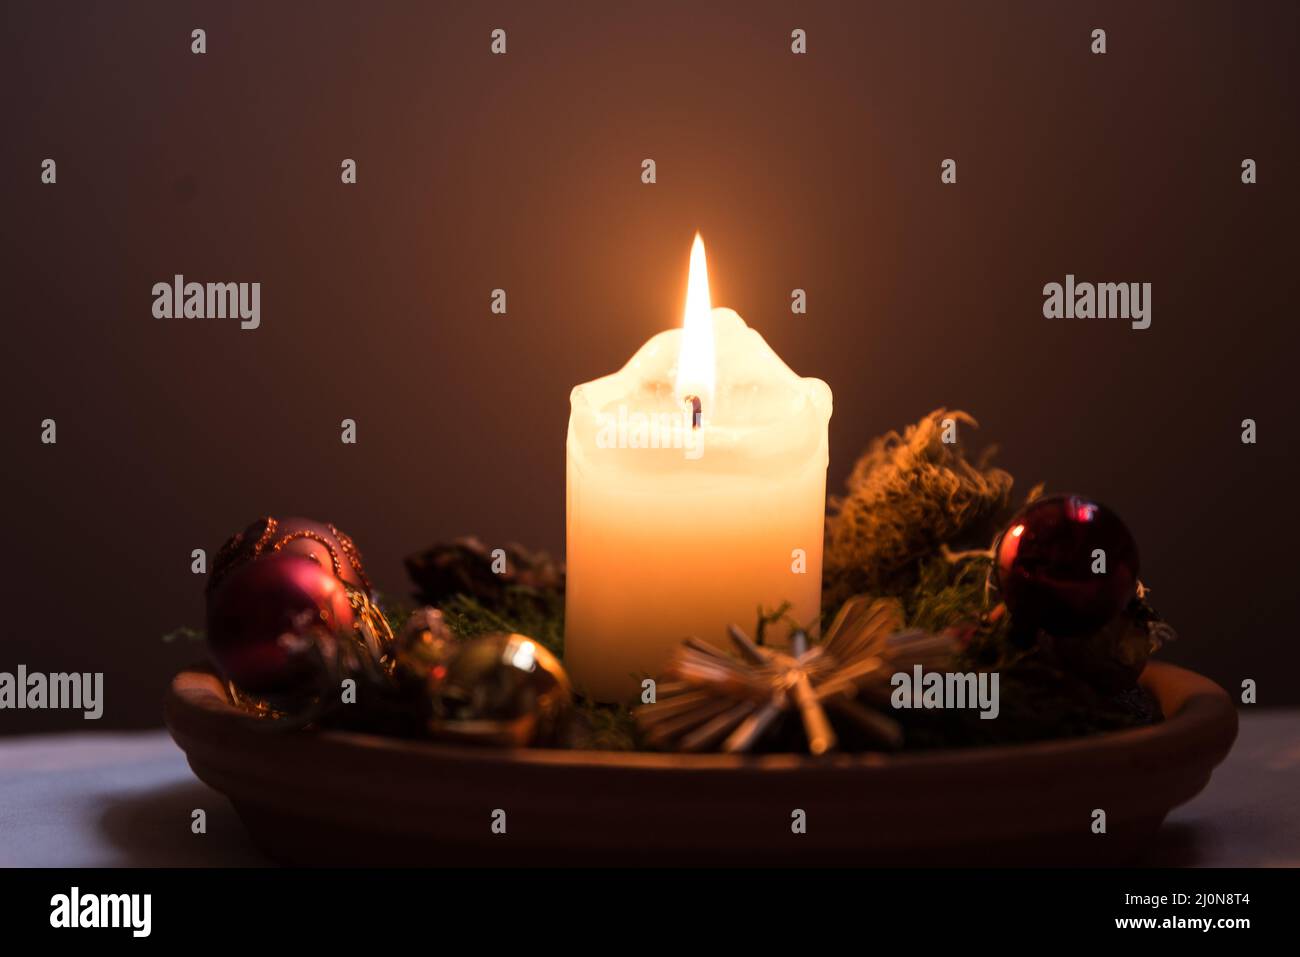 Vela ardiente de ambiente romántico - bolas de árbol de Navidad Foto de stock